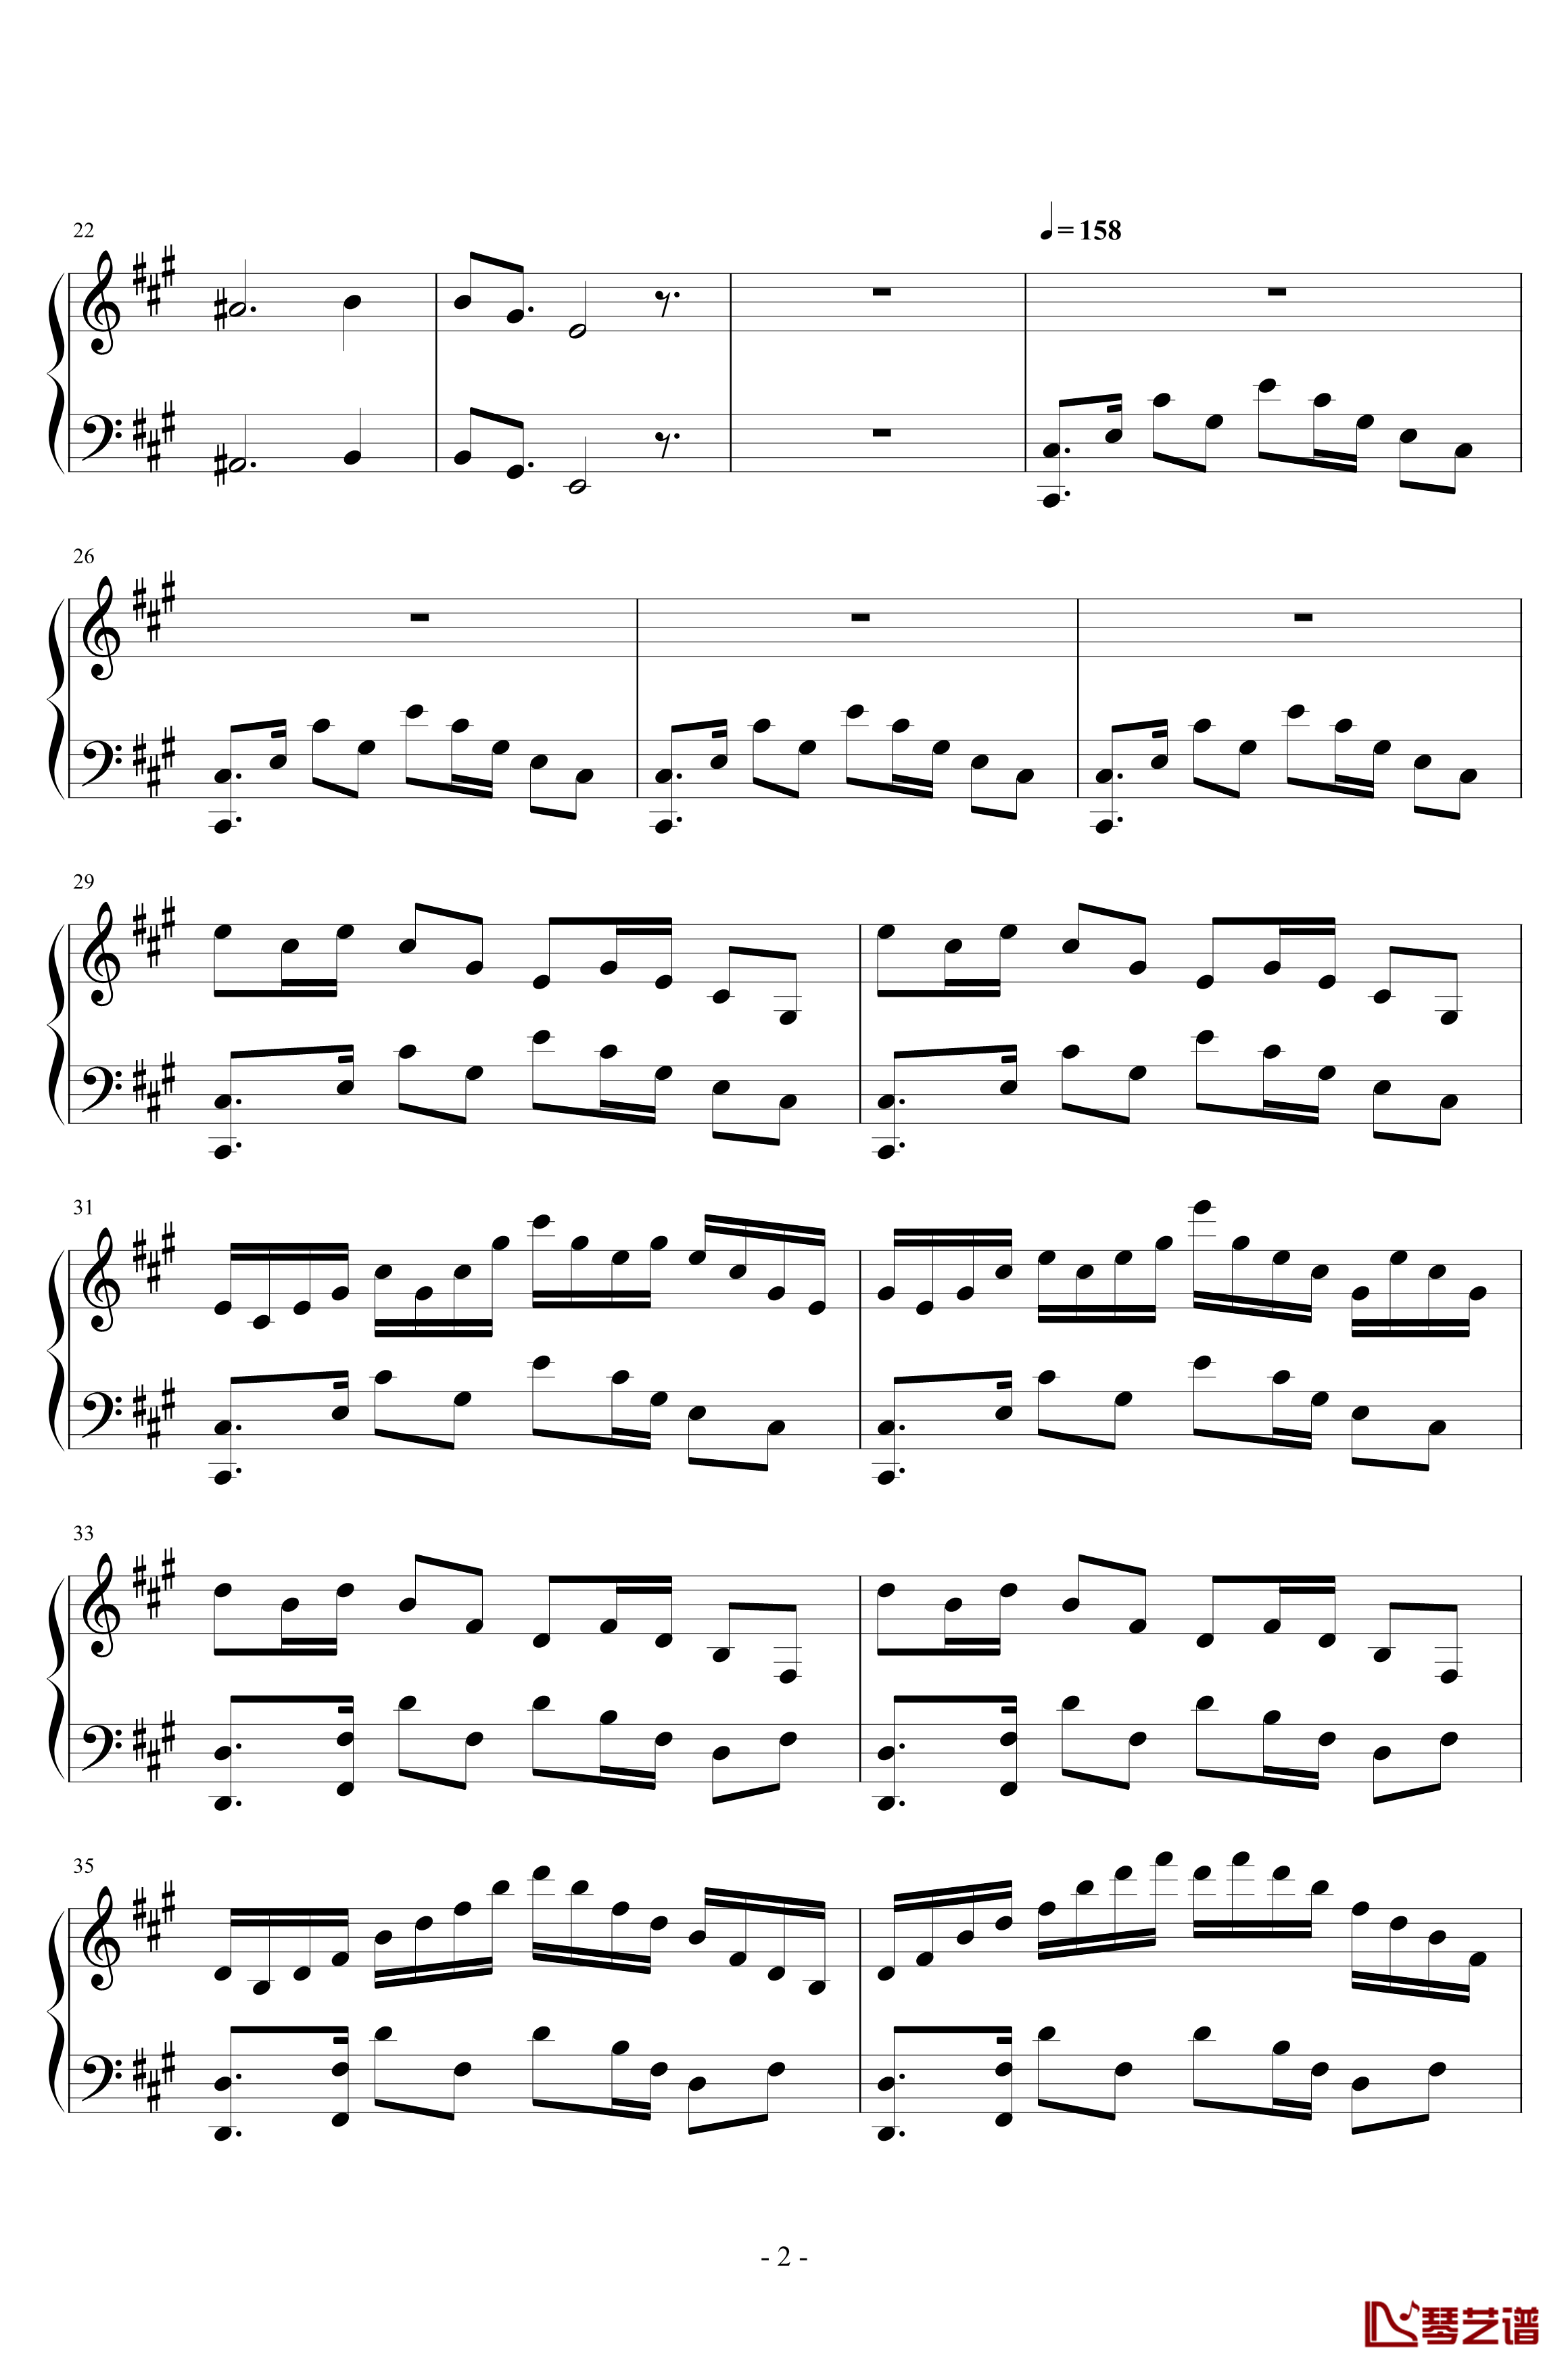 黄昏回旋曲钢琴谱-LN原创-pltp20176211137- Op.1